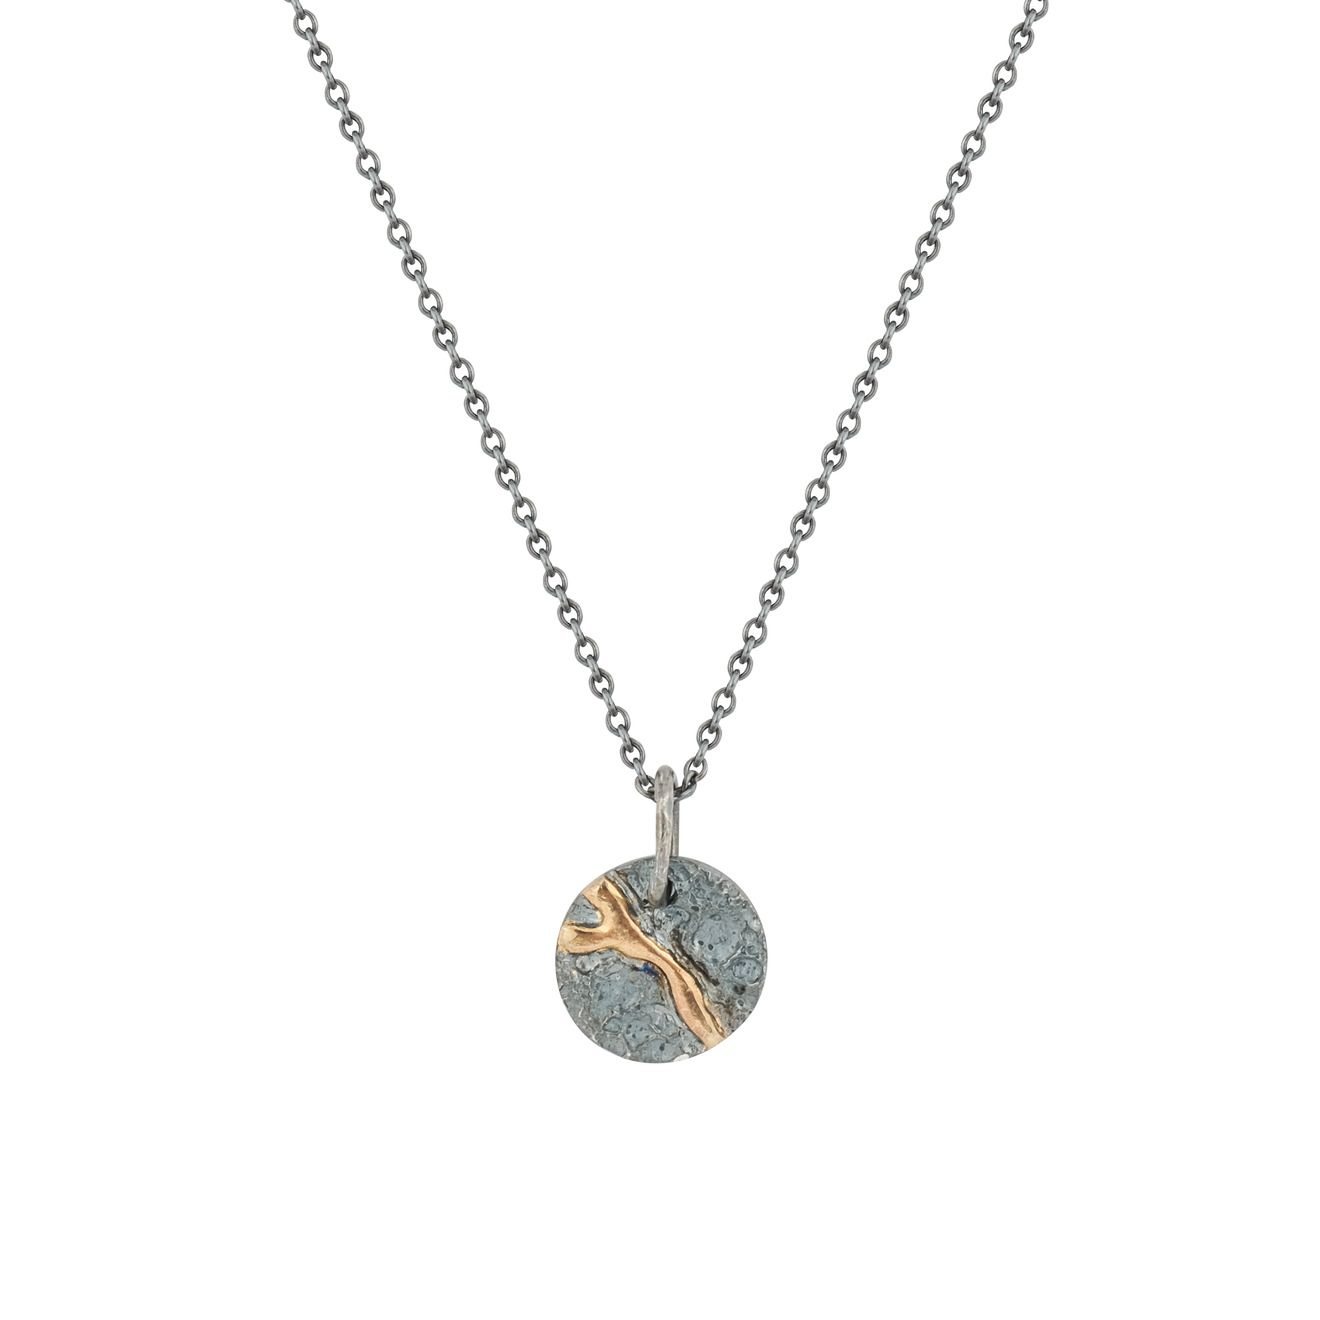 Kintsugi Jewelry Кулон Volcanic power из серебра со вставкой из золота подвеска из серебра со вставкой из поделочного камня яхонт ювелирный арт 2698114